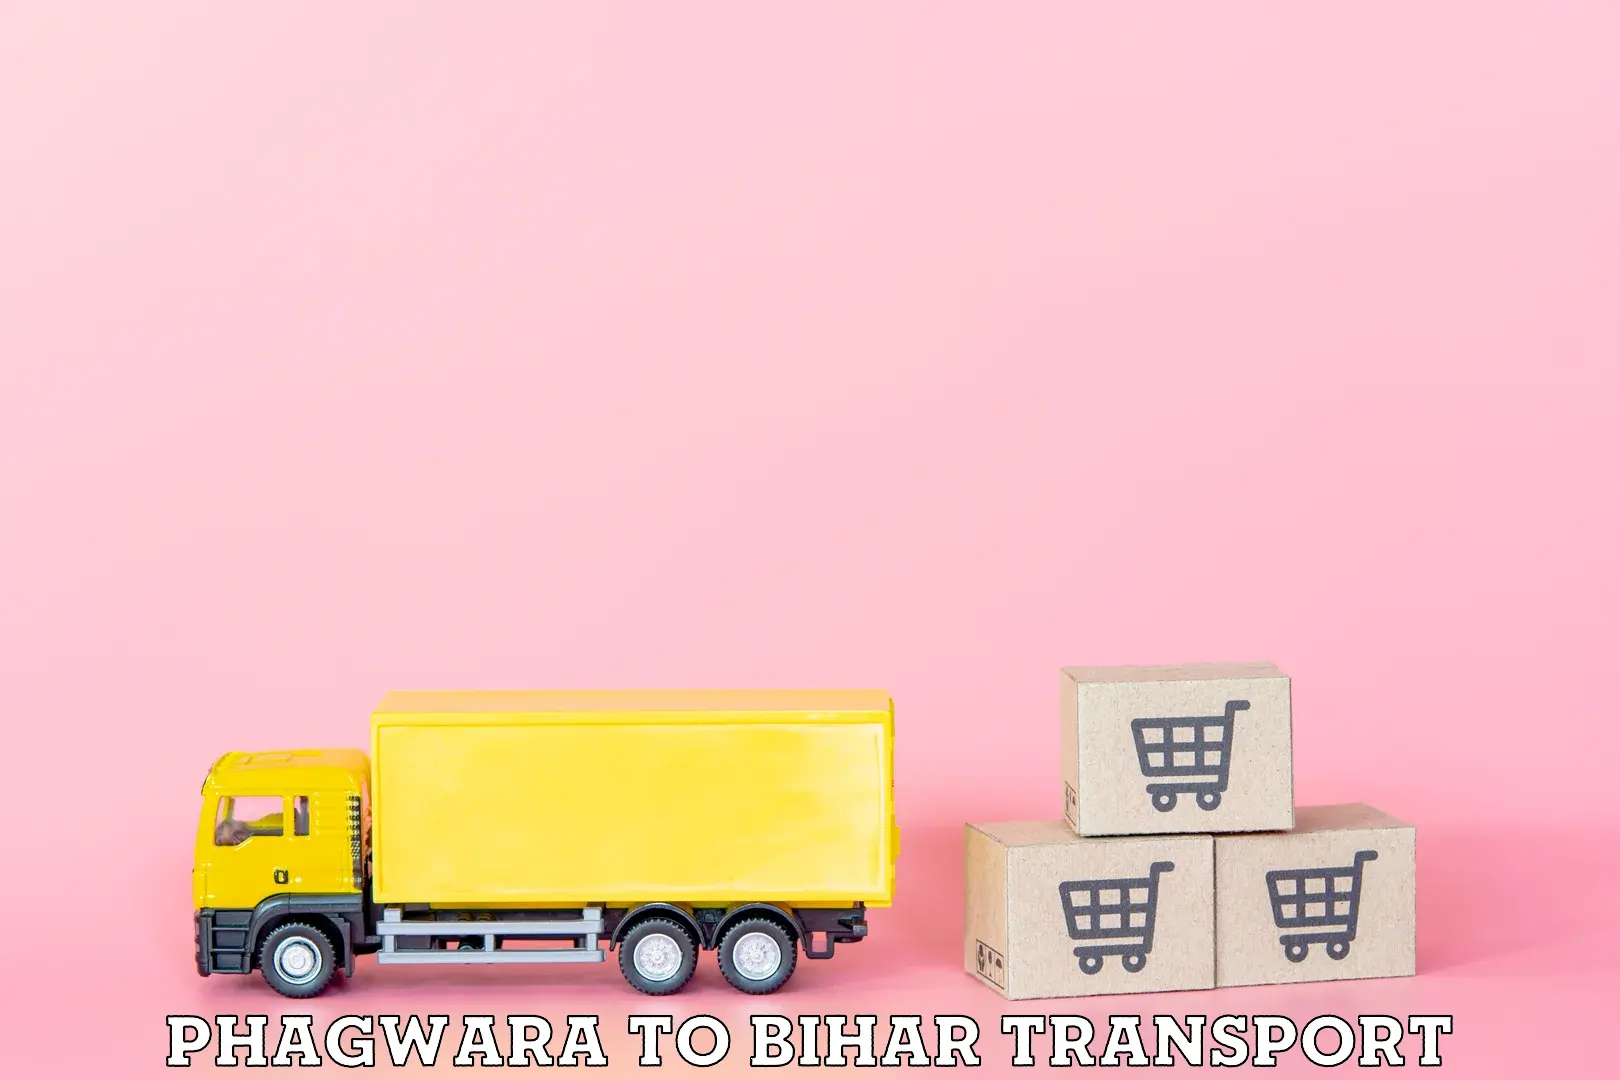 India truck logistics services Phagwara to Bhojpur